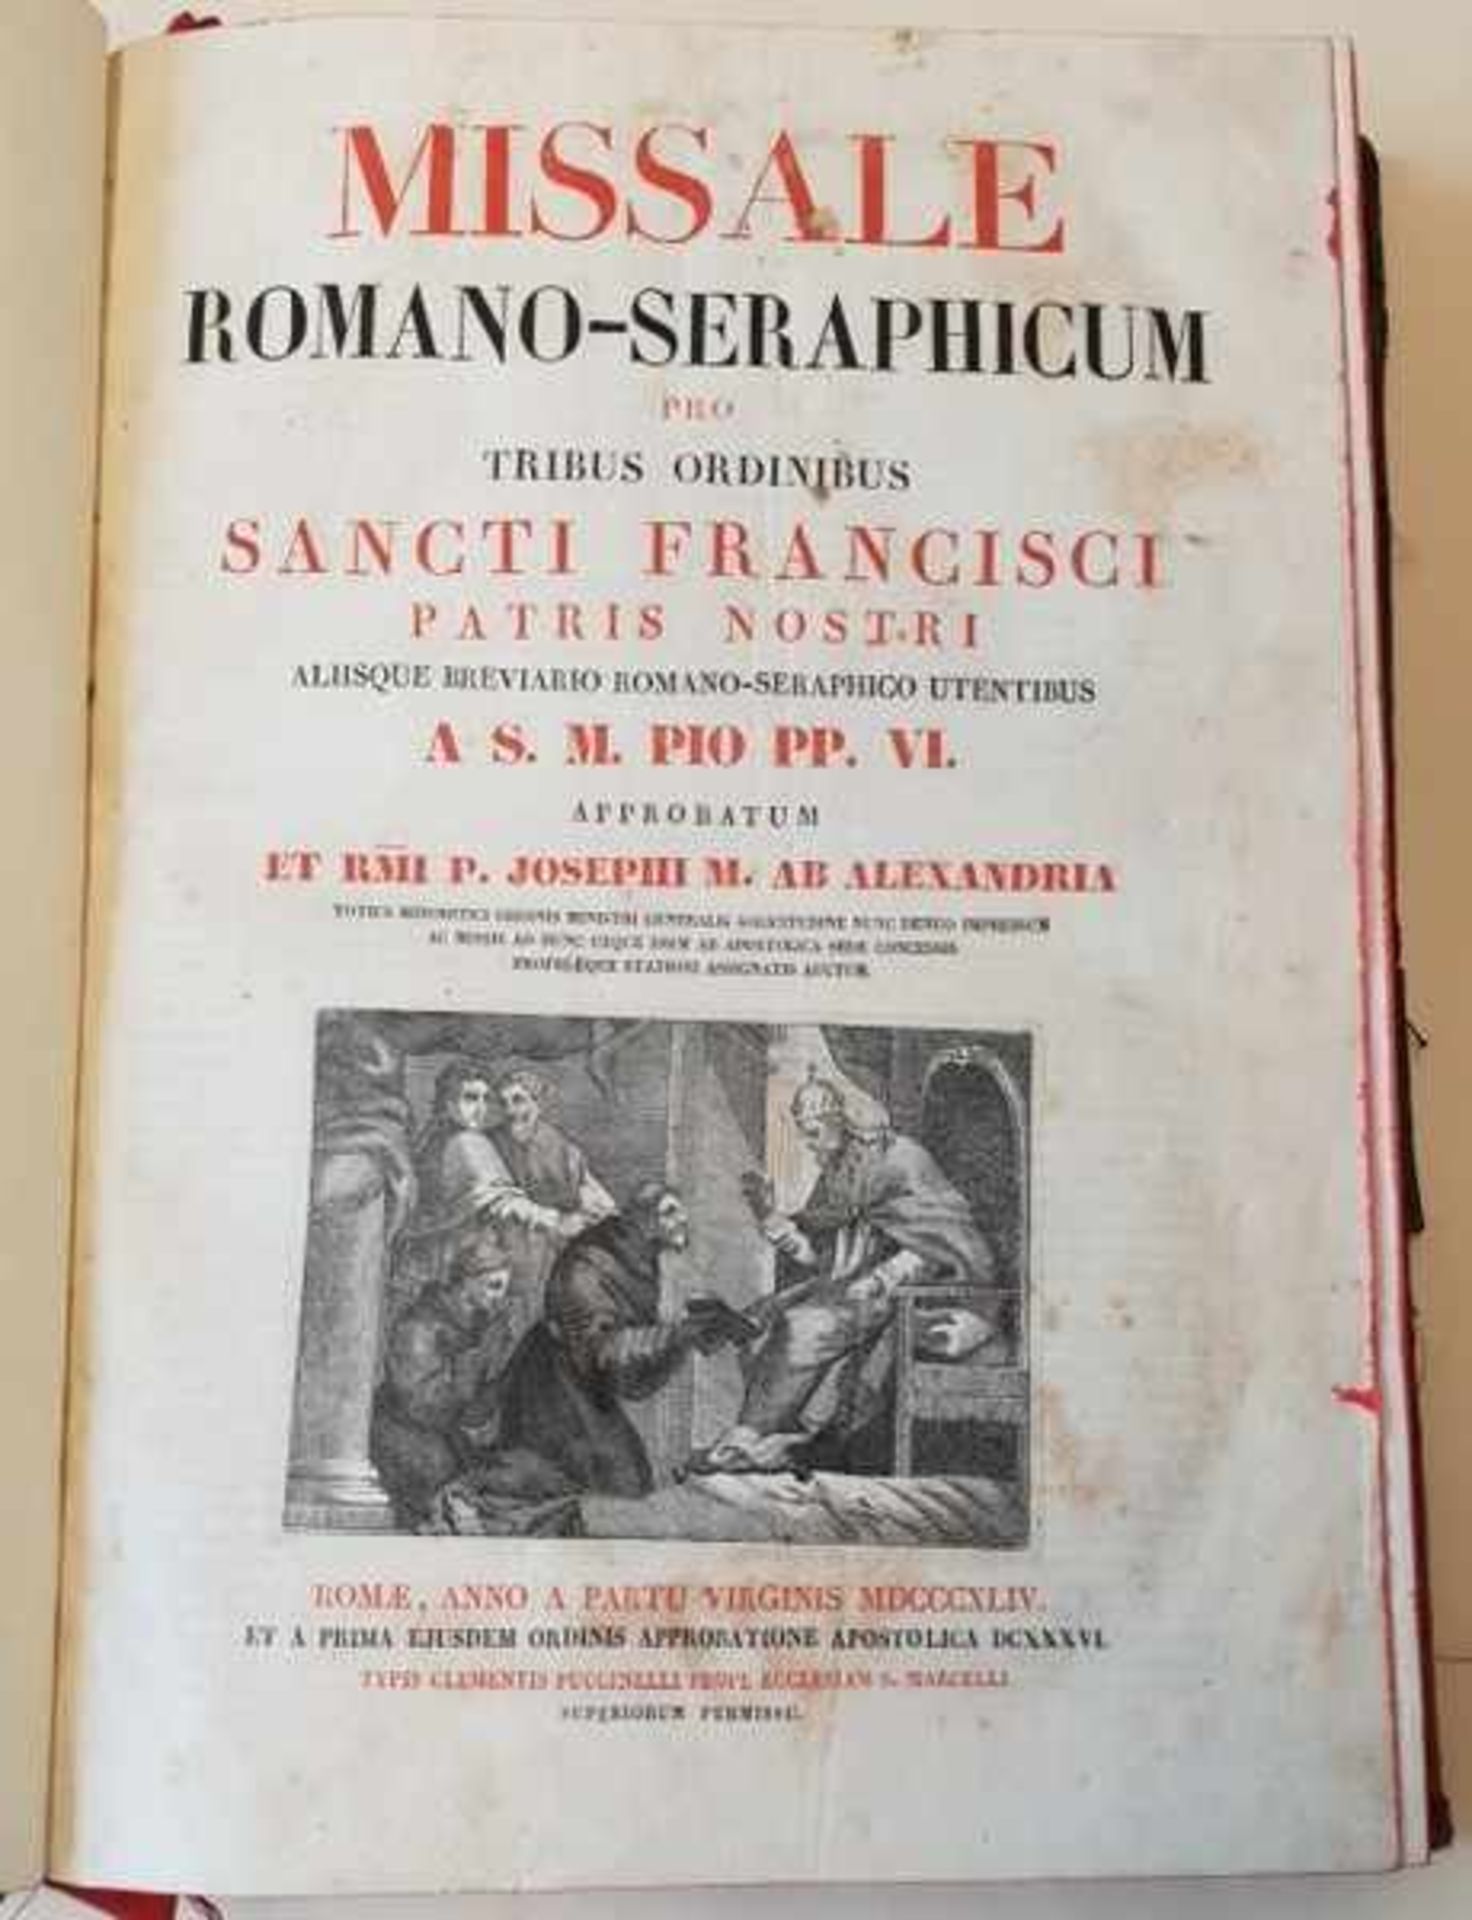 Missale Romano-Seraphicum pro Tribus Ordinibus Sancti Francisci , 1842,Altersgemäßer Zustand, - Image 2 of 5